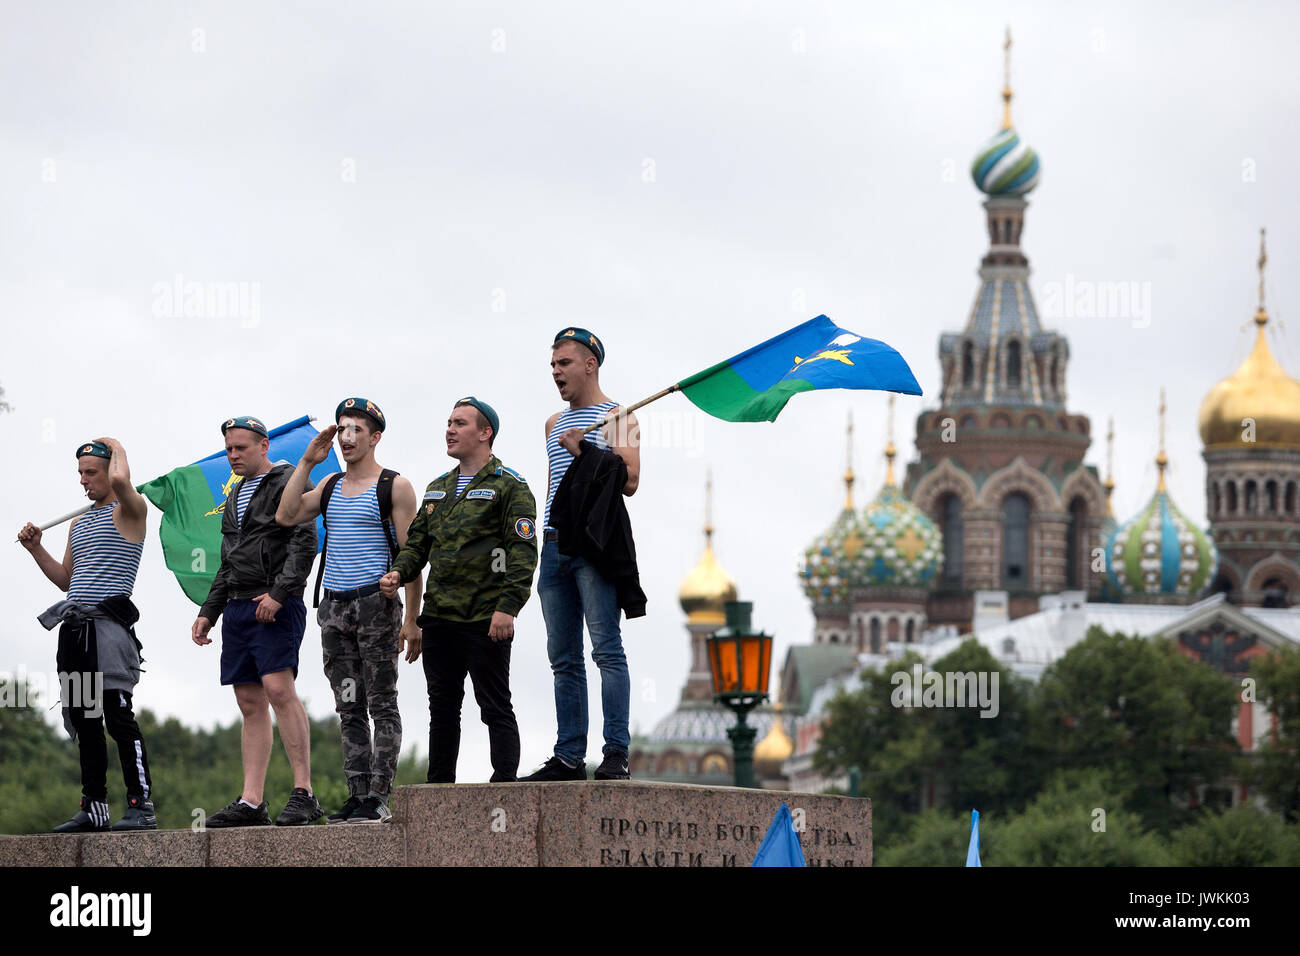 Ex paracadutisti russa nel corso delle celebrazioni di paracadutisti" Giorno nel Campo di Marte Park. In Russia la Truppe aviotrasportate (berretti blu) celebrare la loro vacanza professionale il giorno di Elia Profeta, loro patrono. Foto Stock